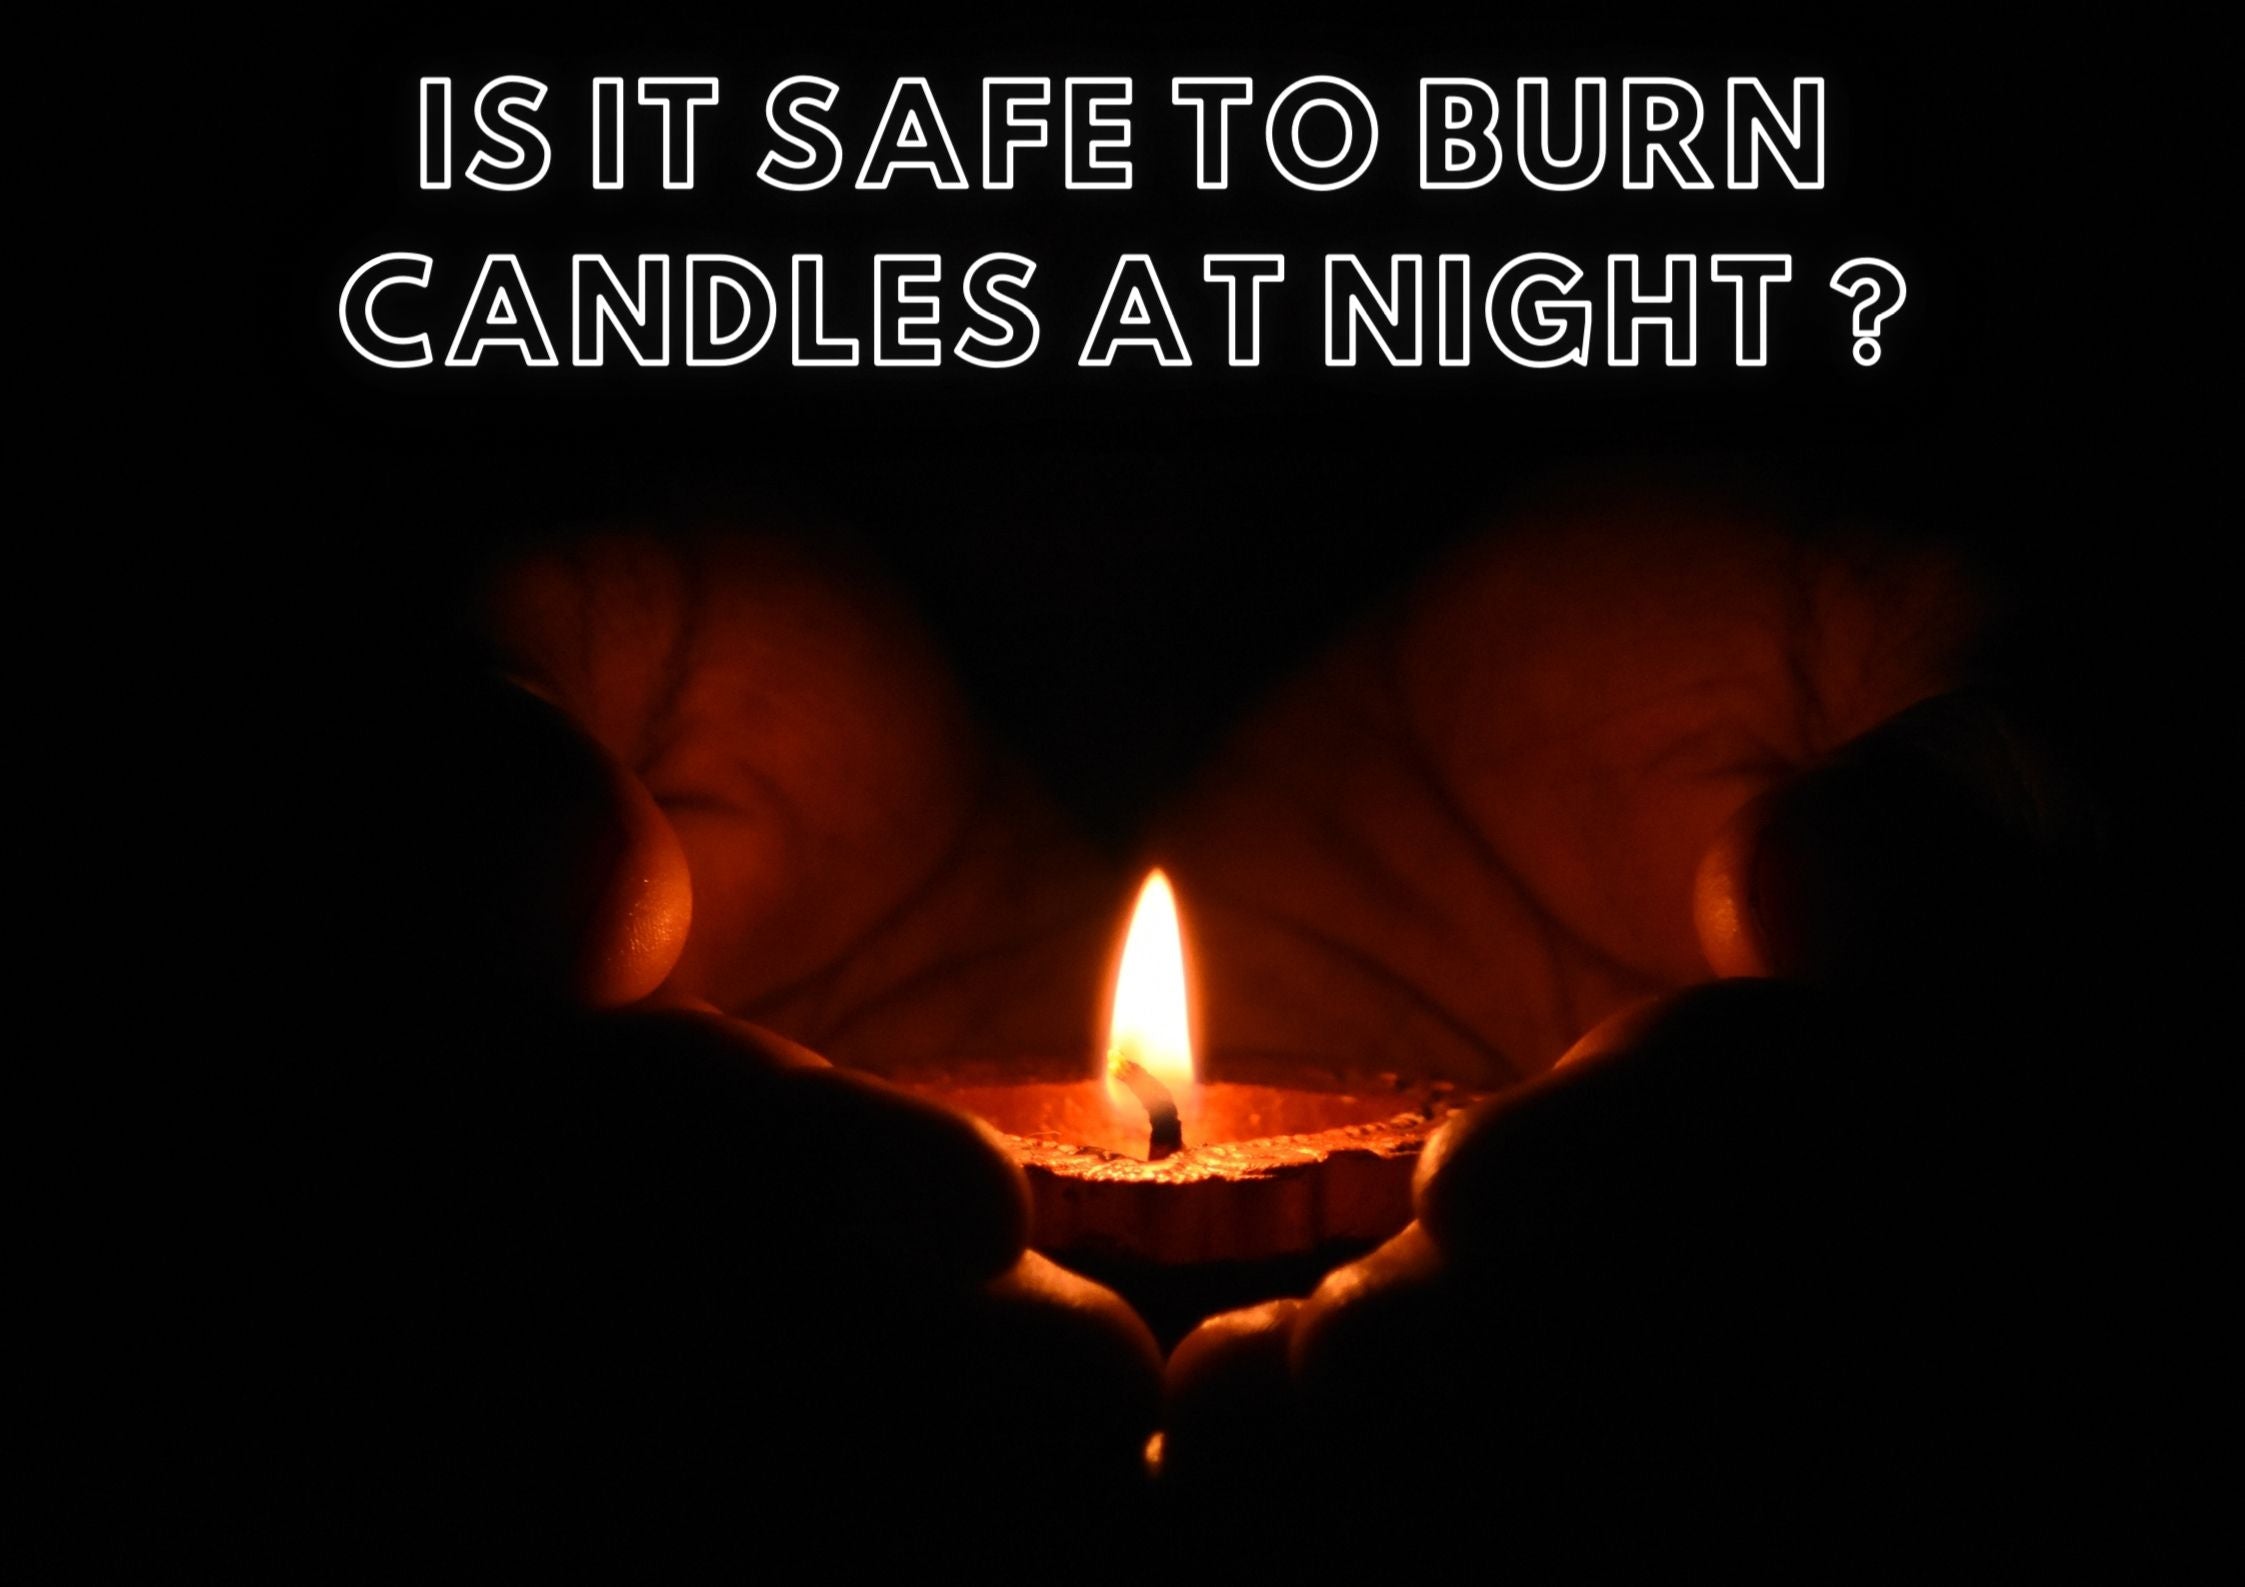 Burning candles at night 